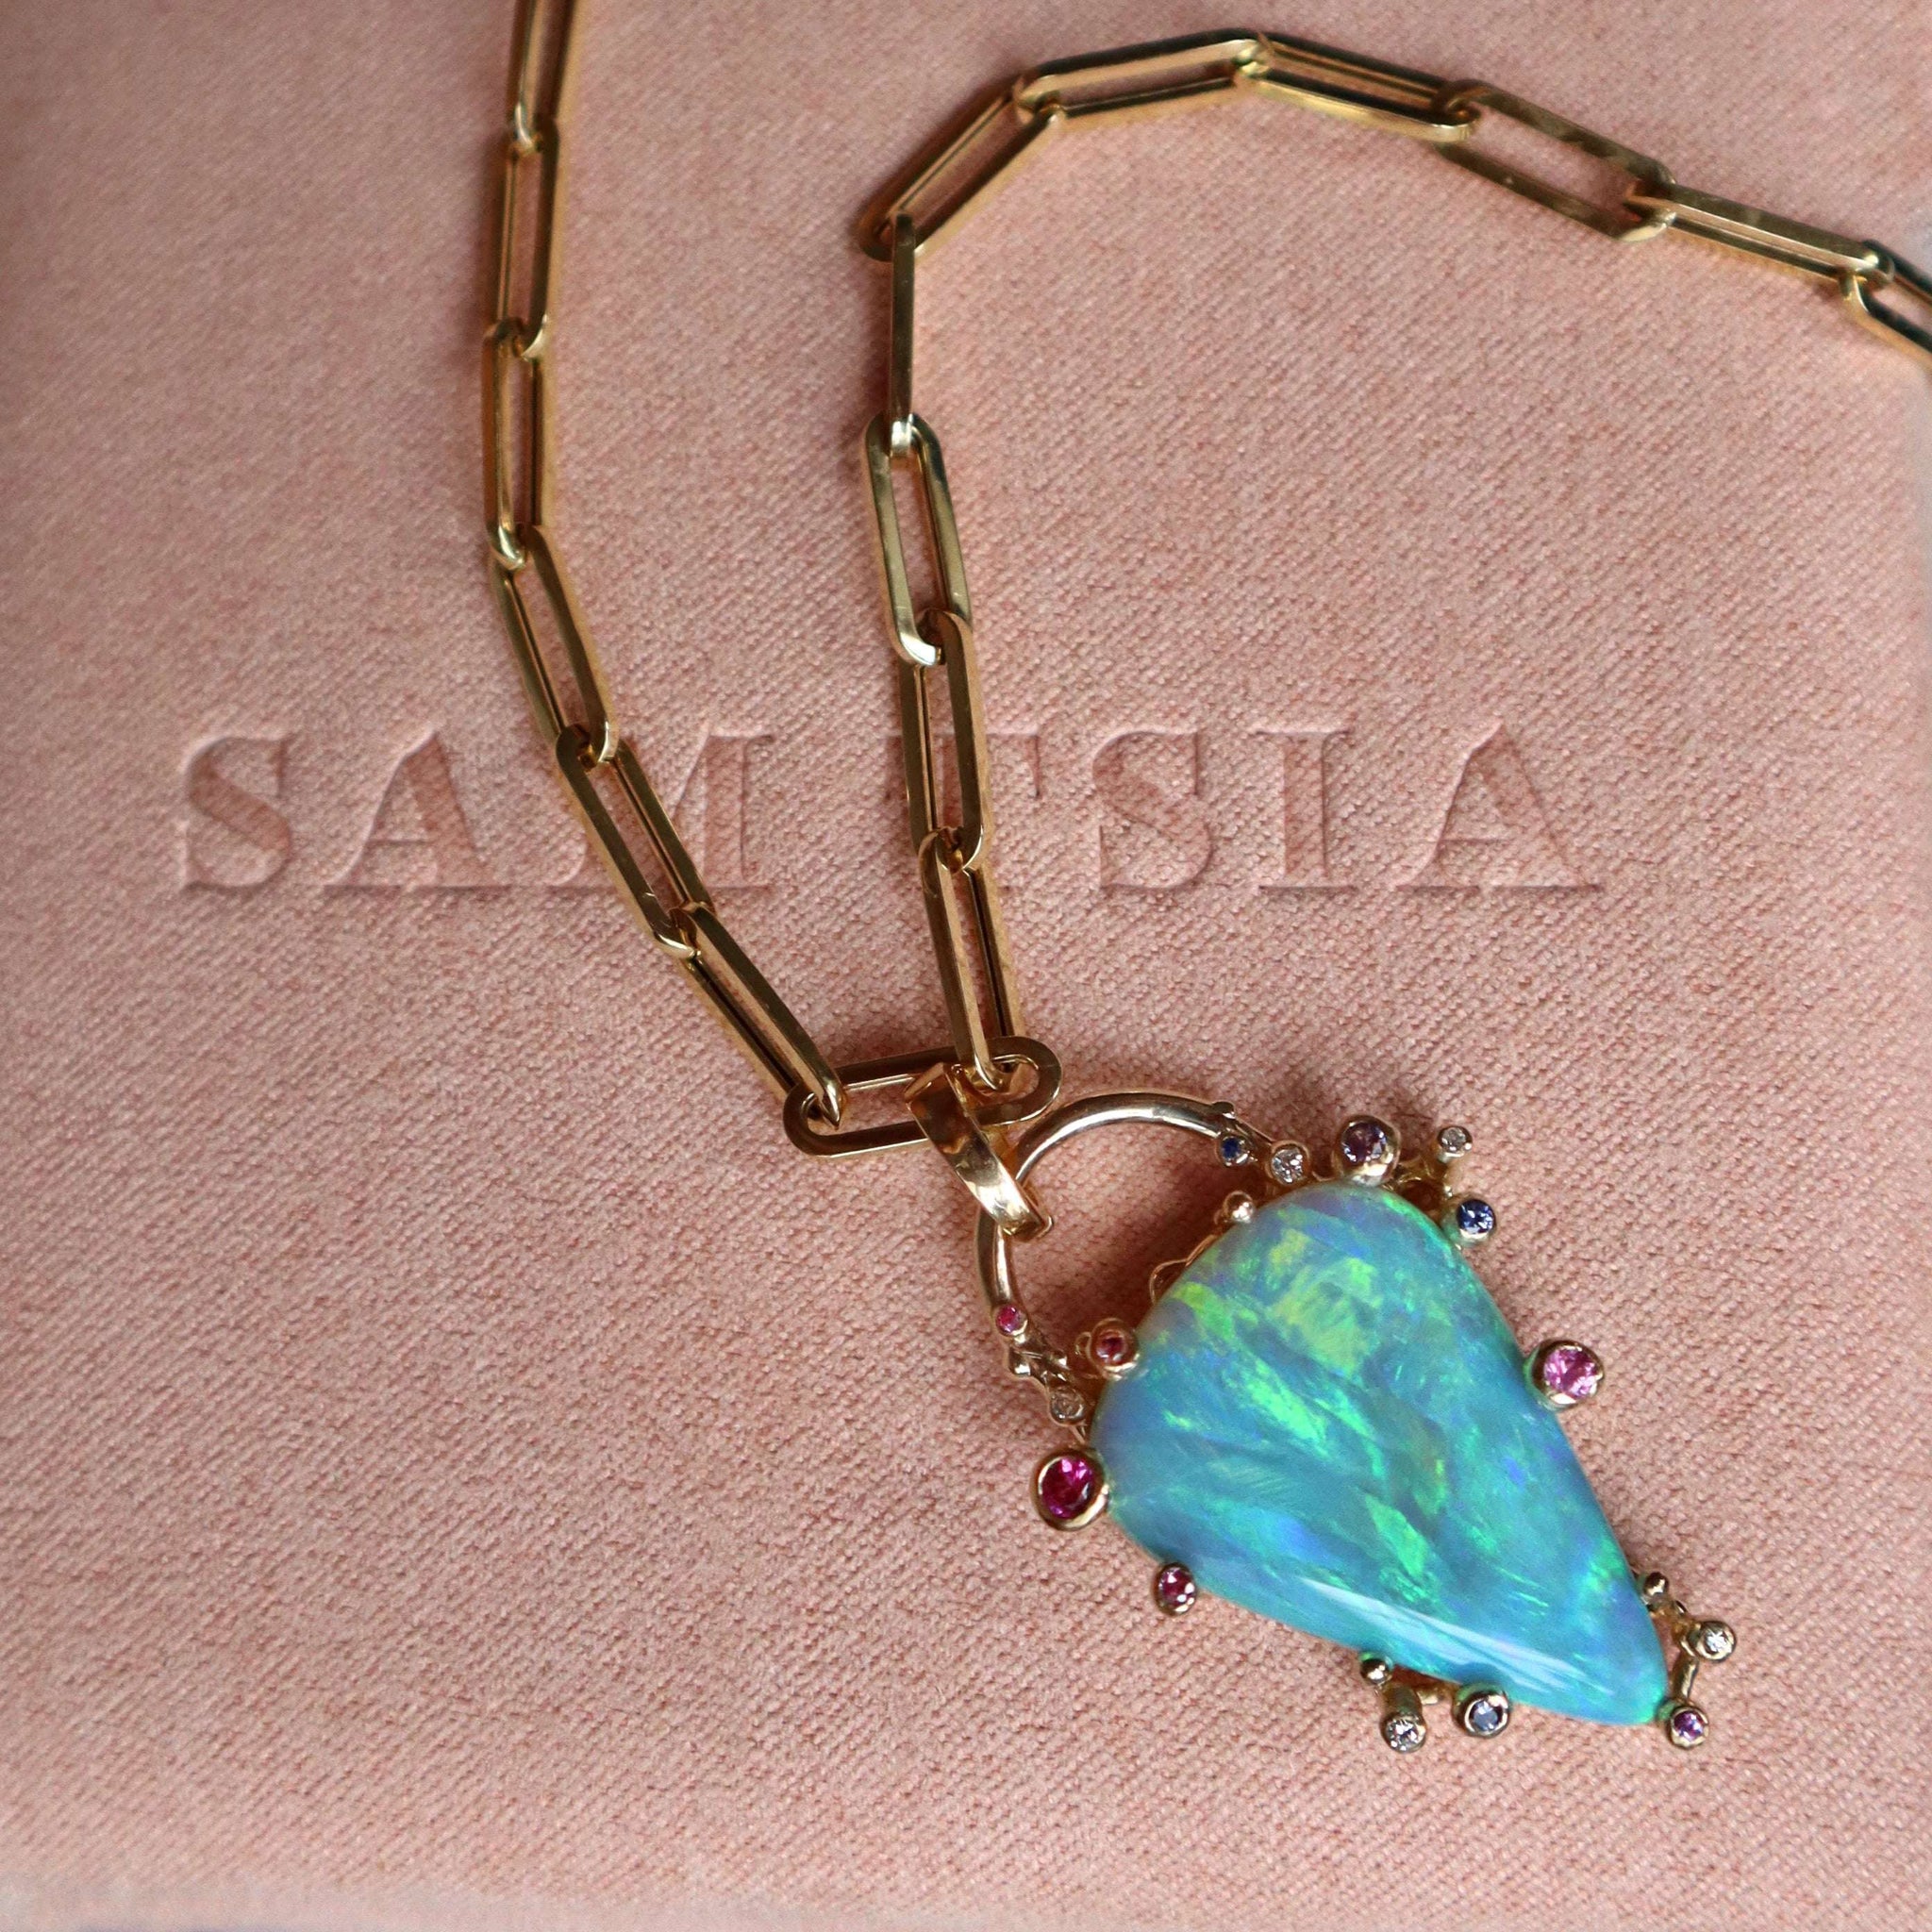 Aqua Fantasea Necklace - Sam Tsia